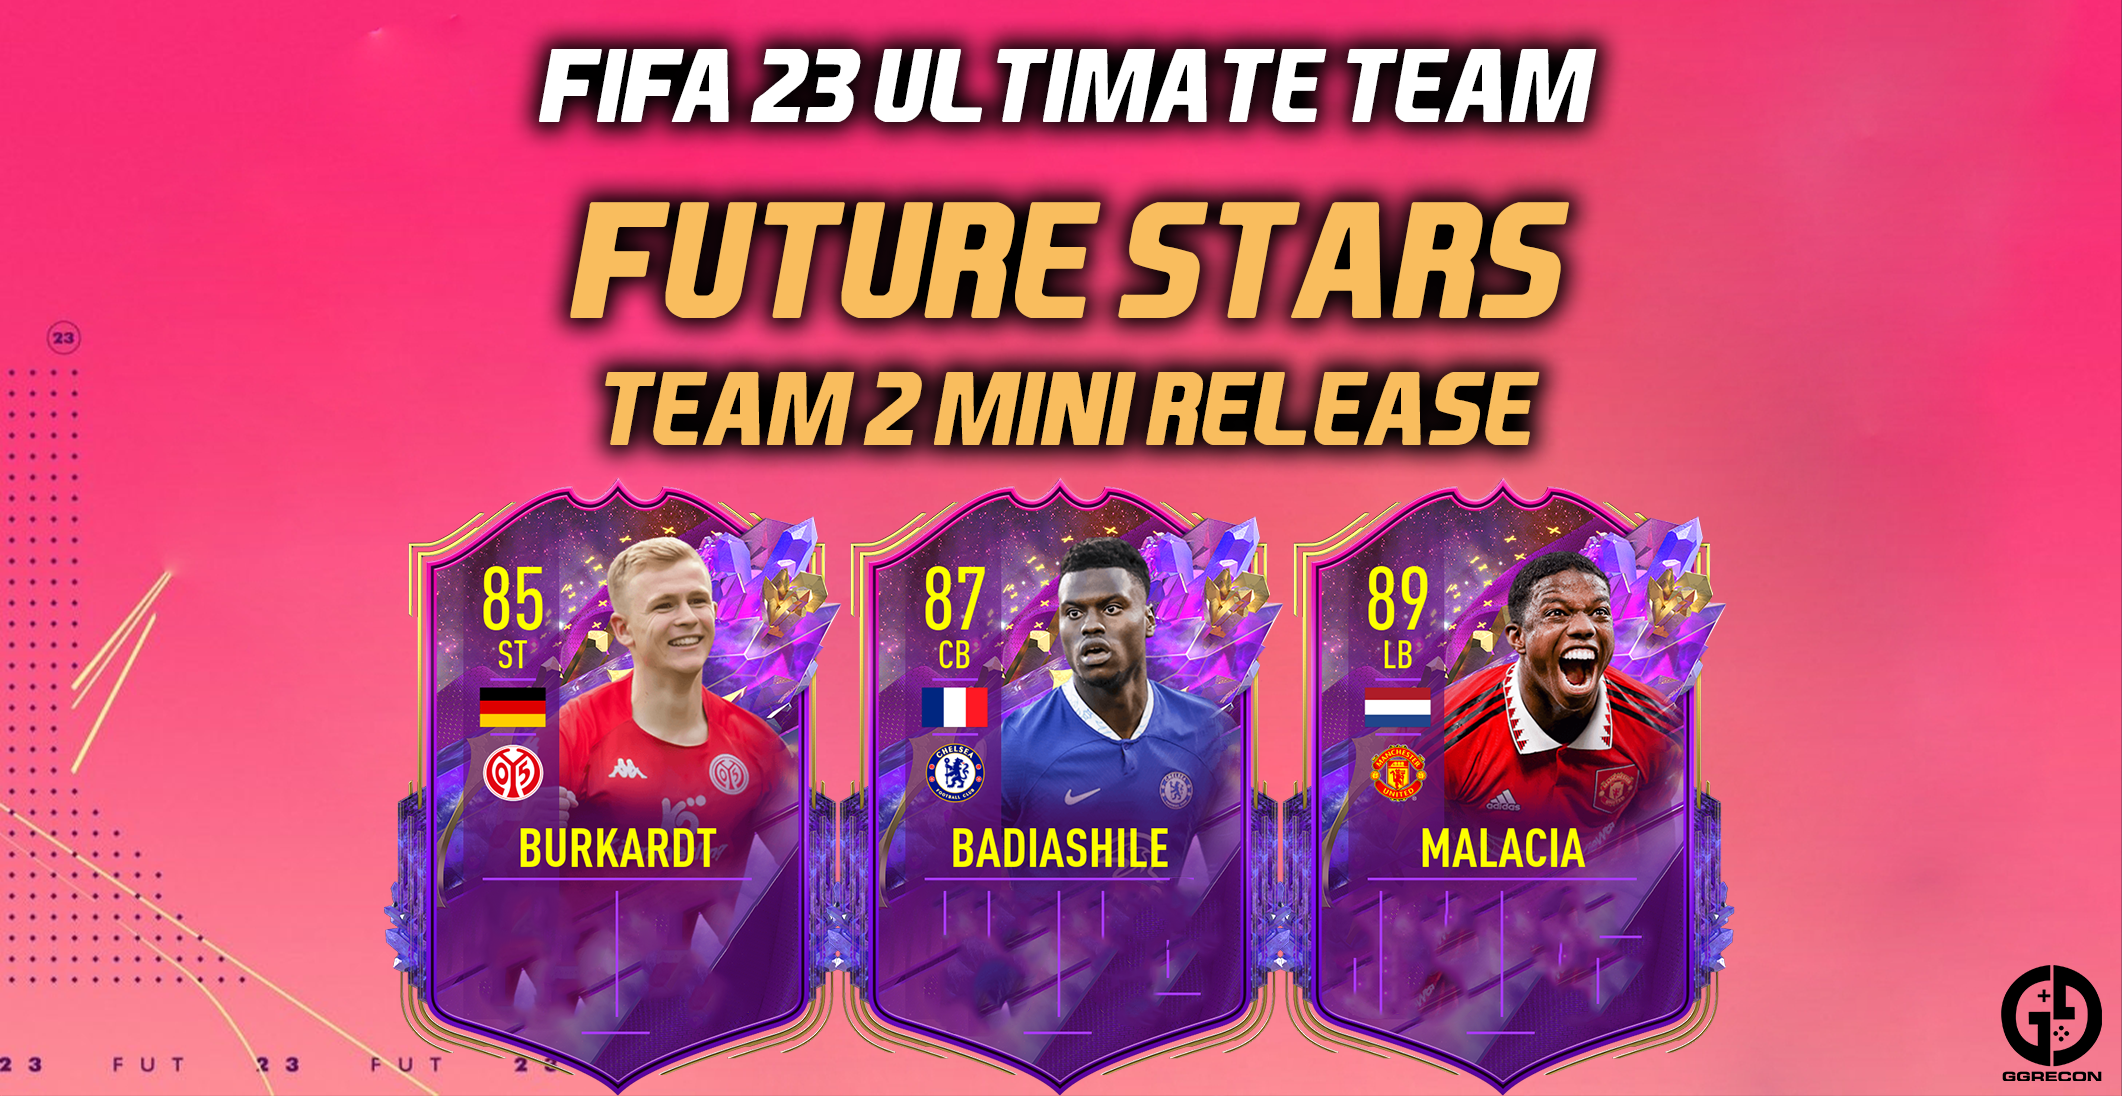 FIFA Future Stars Team Includes Malacia And Badiashile